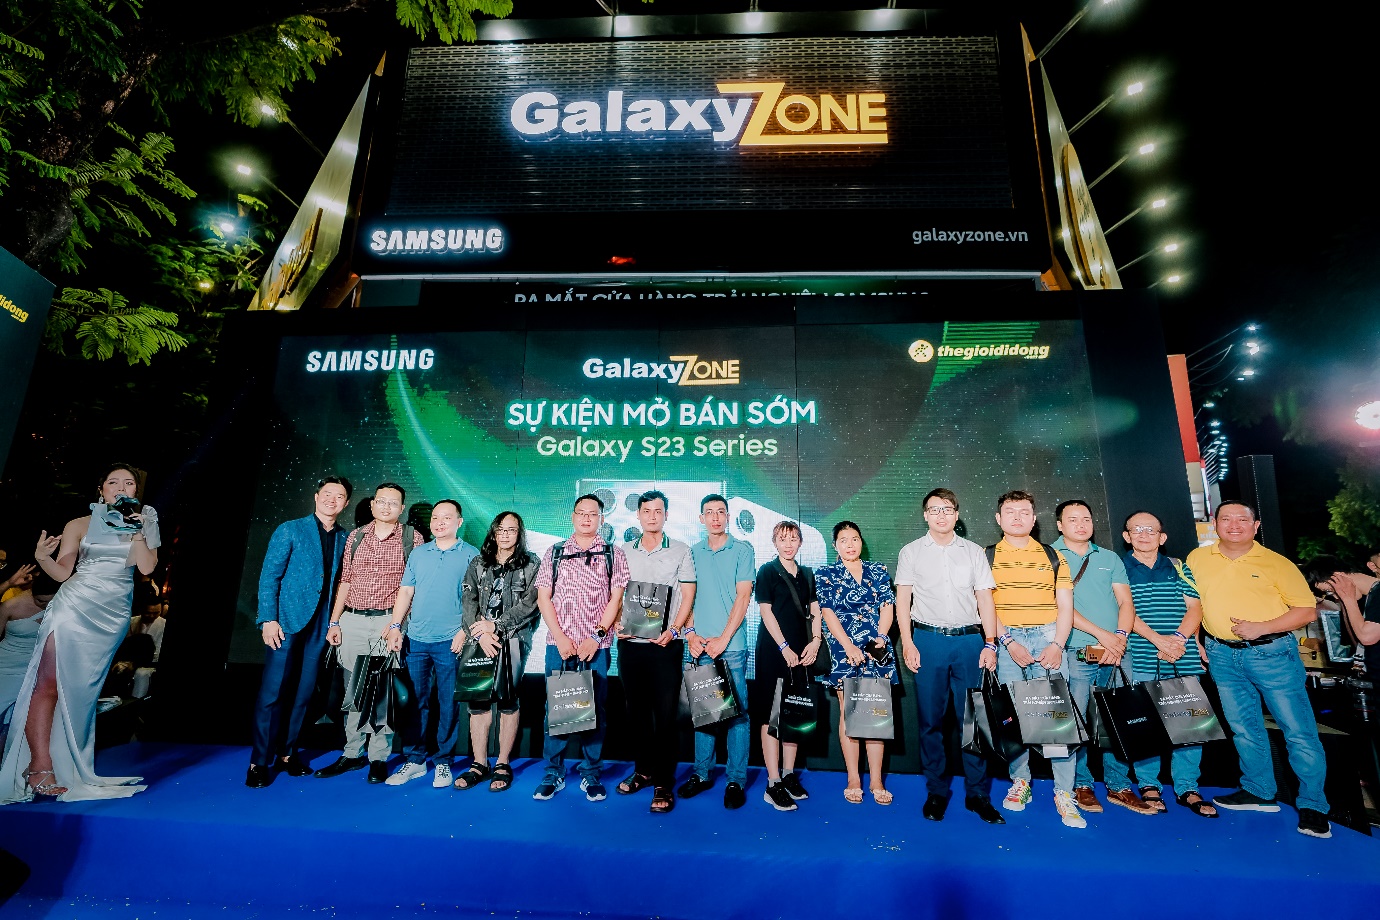 Giới trẻ háo hức nhận Galaxy S23 Series sớm trong ngày khai trương cửa hàng trải nghiệm Samsung GalaxyZone - ảnh 6